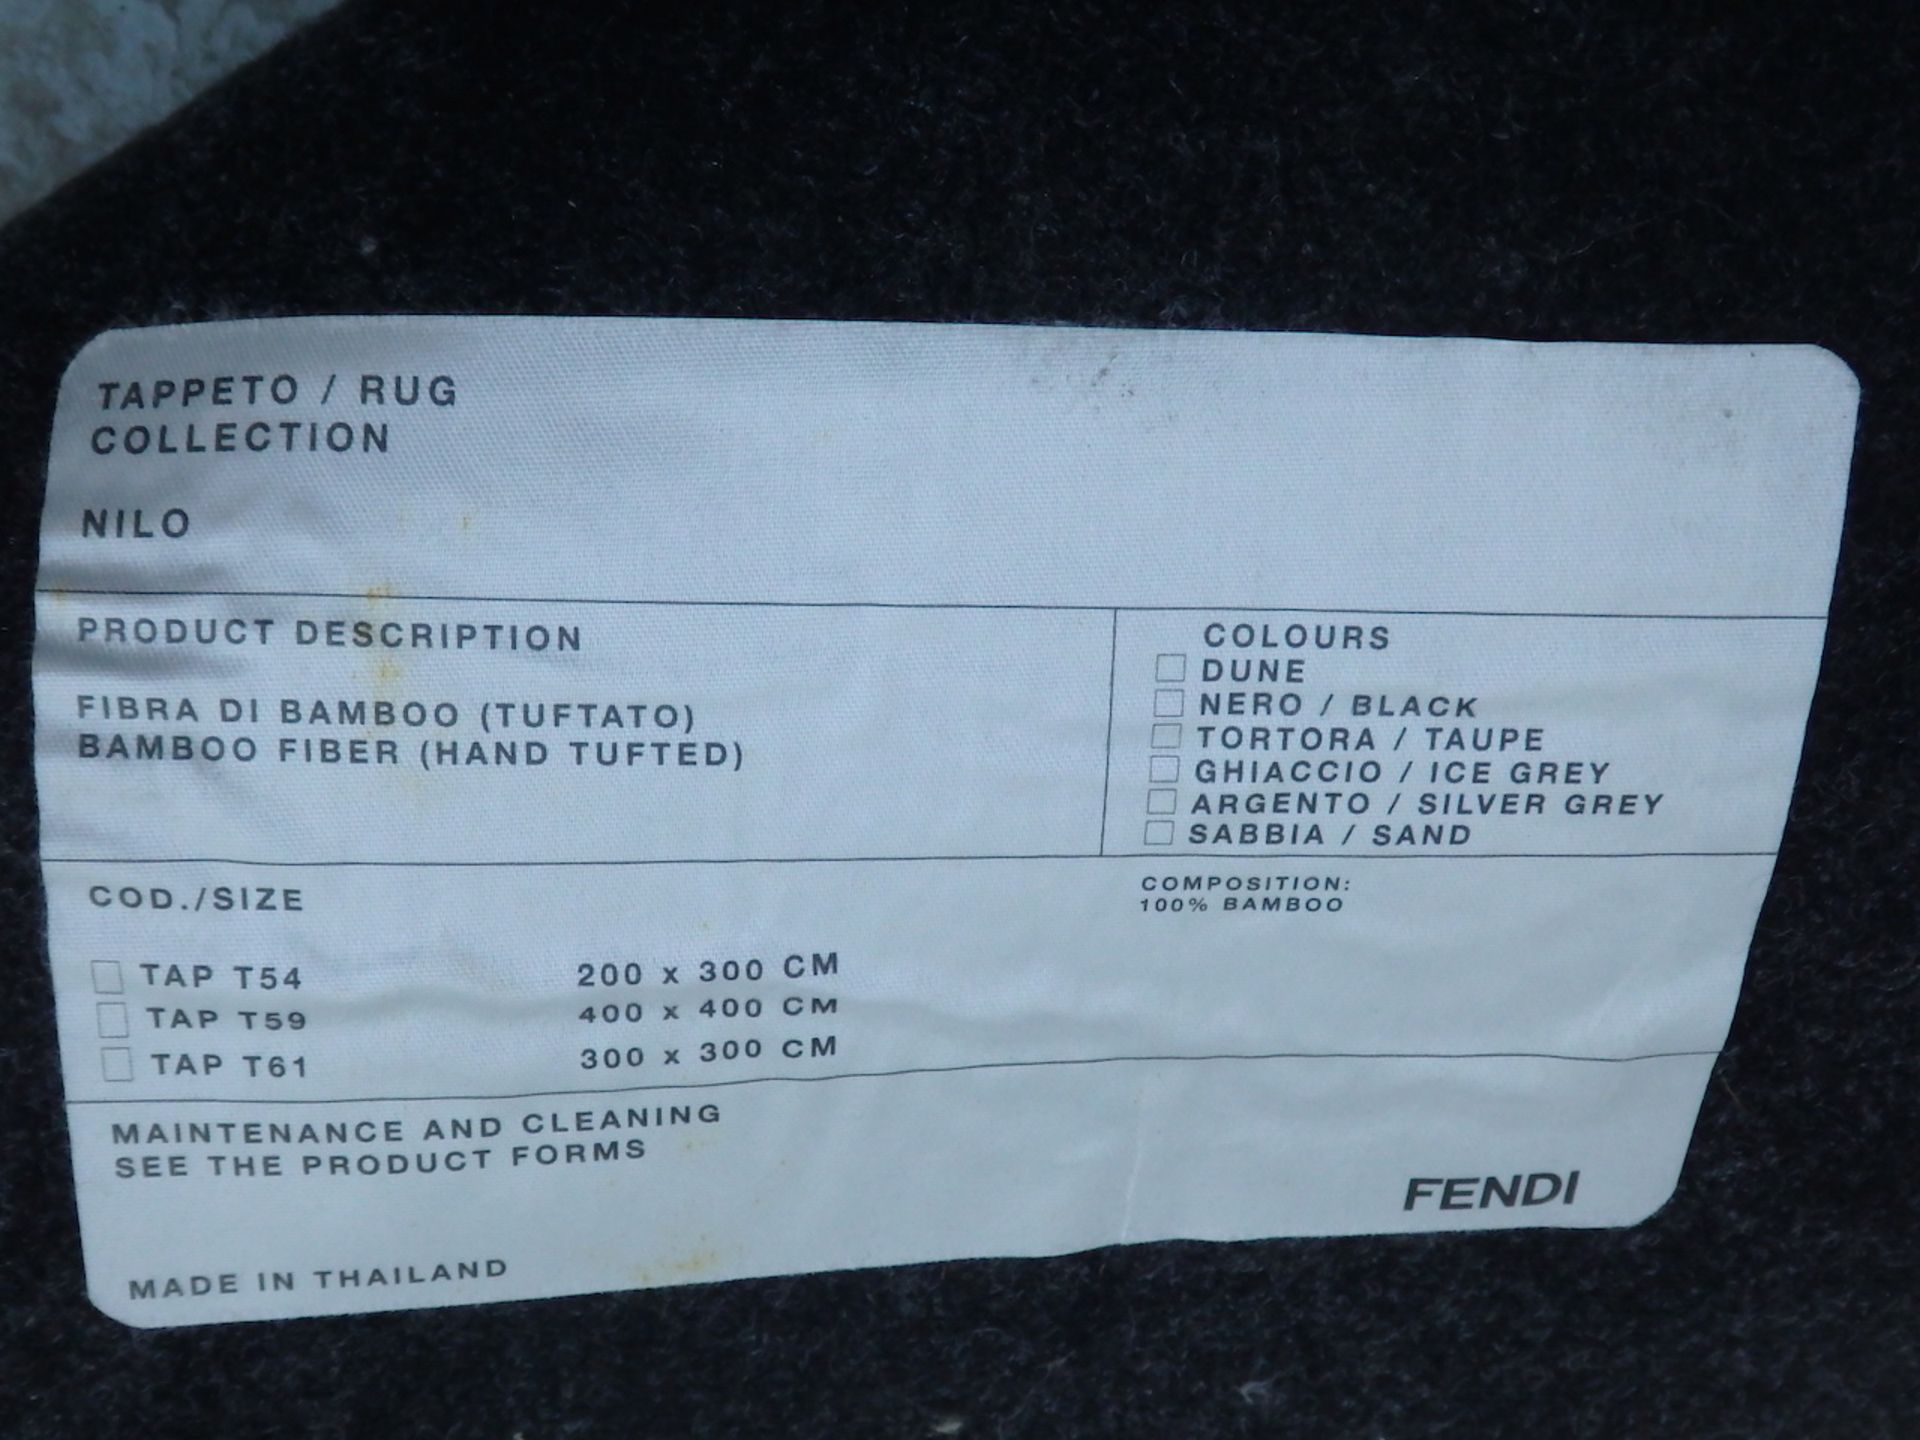 1 x Fendi Tappeto Rug Nilo Cream 300x300cm  - Type TAP61- CL087 - Location: Altrincham WA14 - £9000! - Image 8 of 13